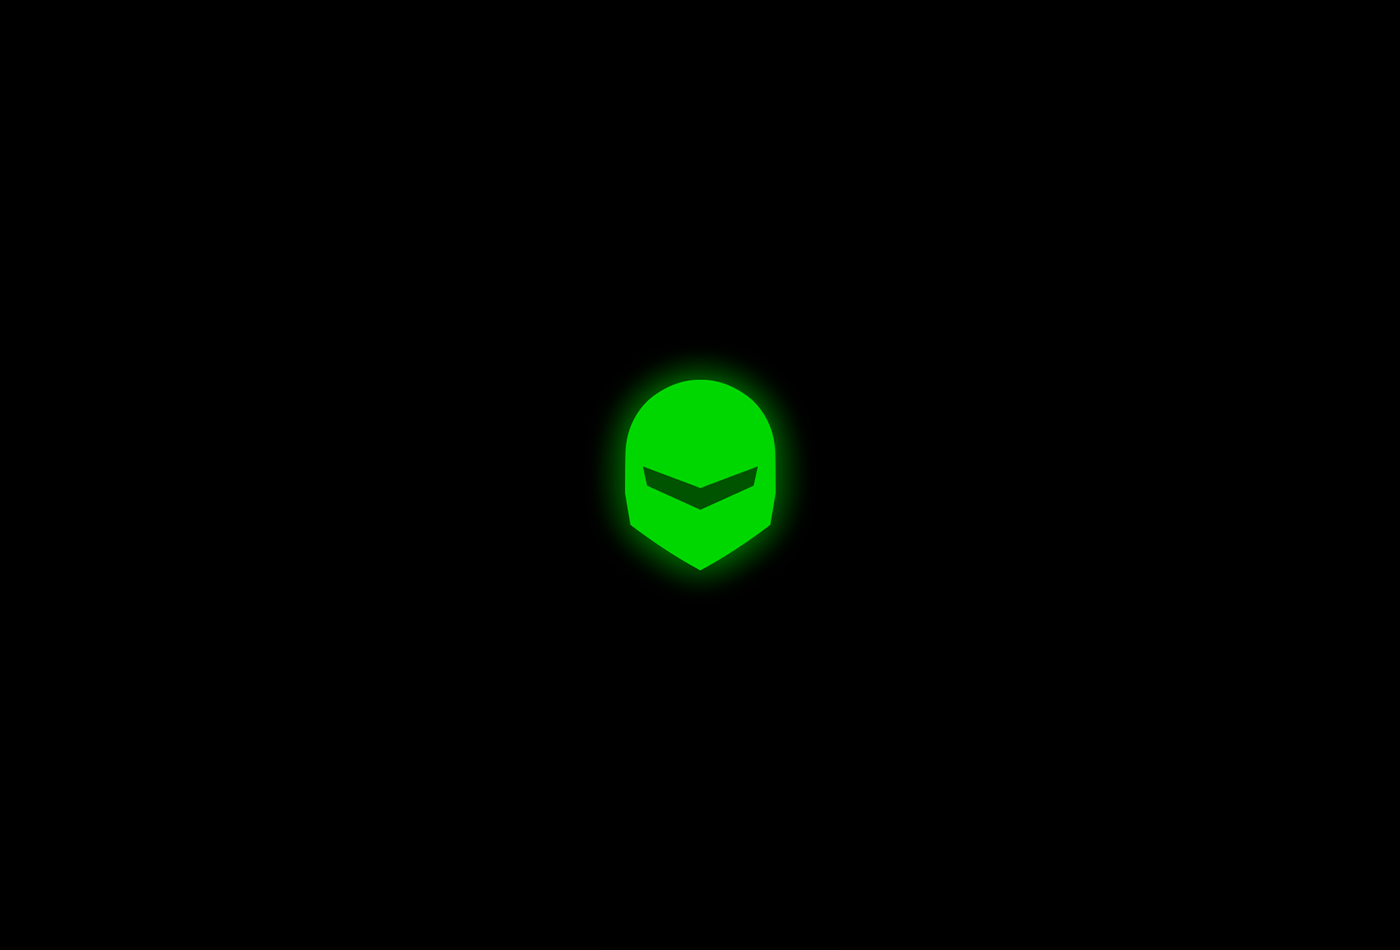 brand design green logo logos neon security